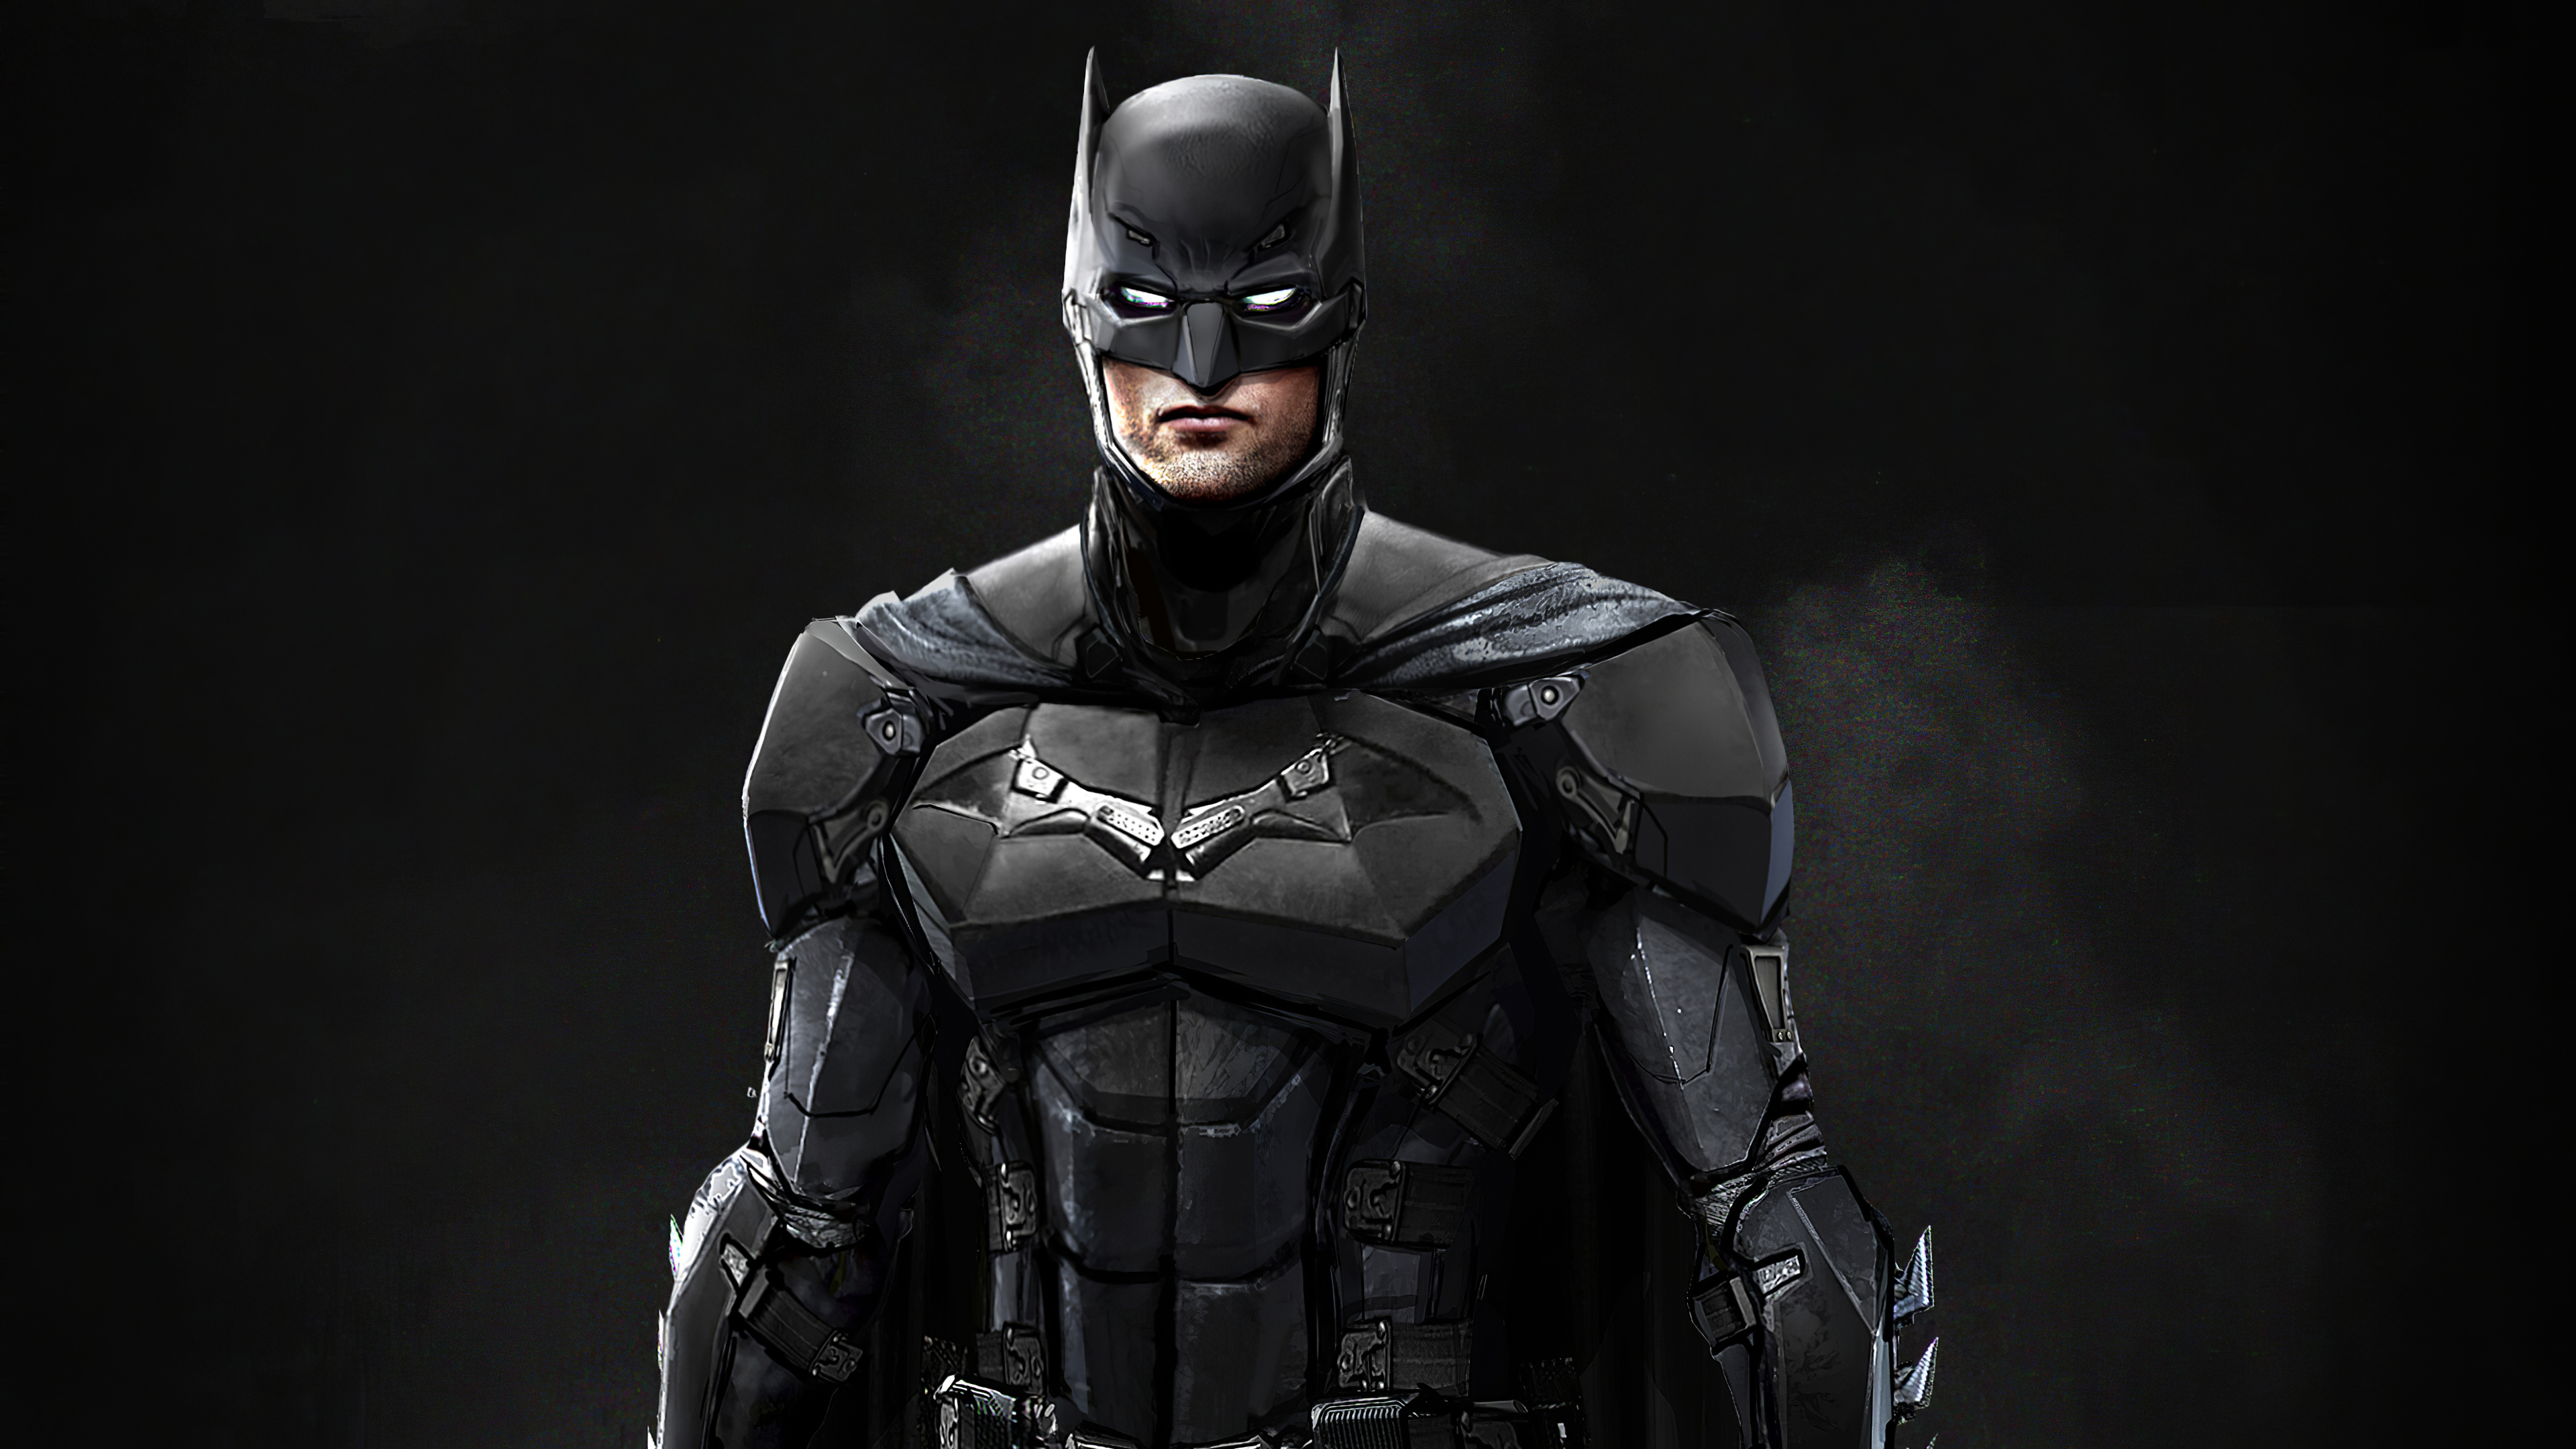 Batman's suit Wallpaper 4k HD ID:5743